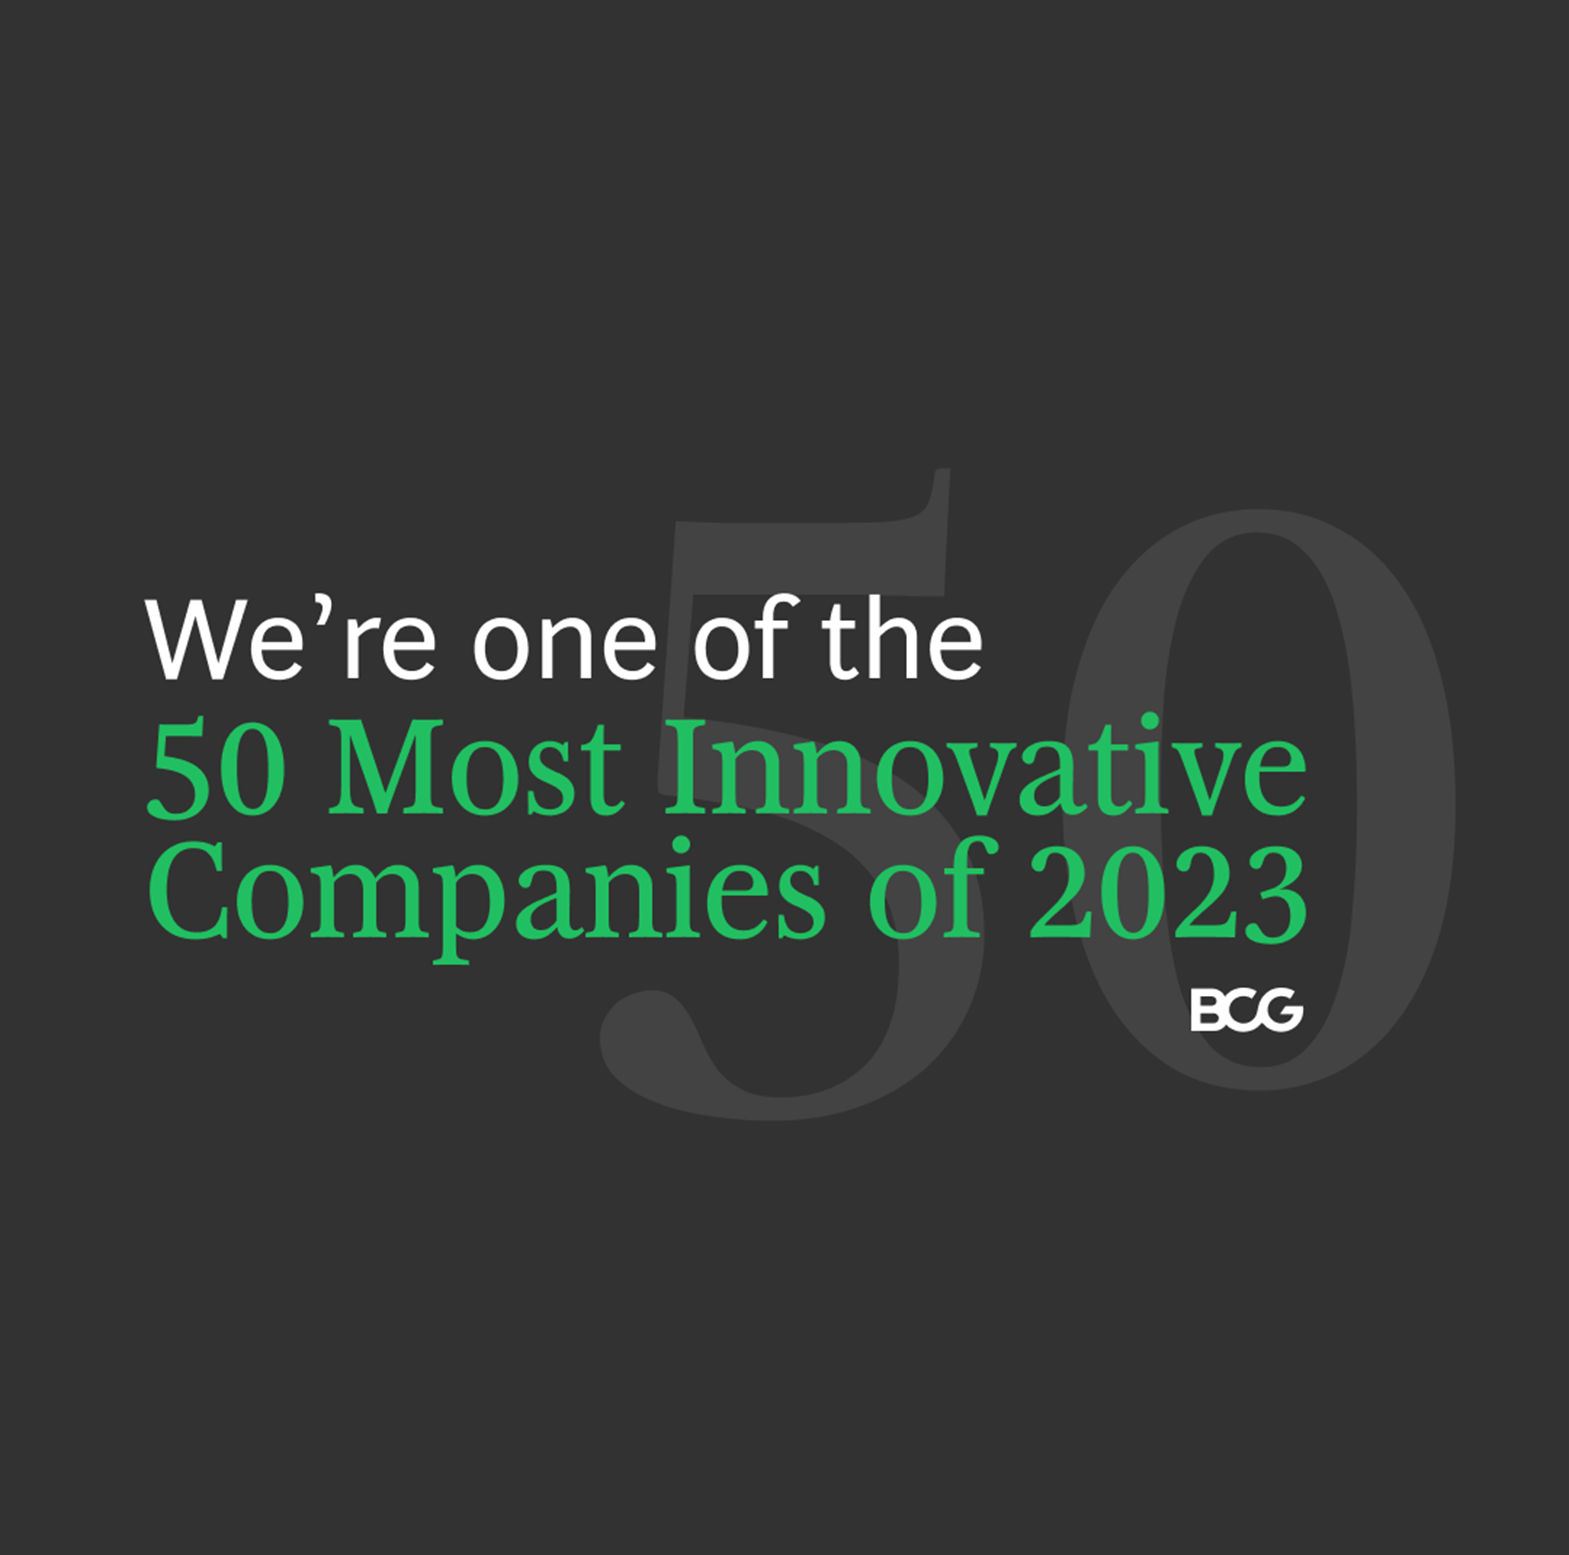 เสียวหมี่ขยับอันดับขึ้นไปอยู่ในท็อป 50 บริษัทที่มีนวัตกรรมมากที่สุด ของการจัดอันดับโดย Boston Consulting